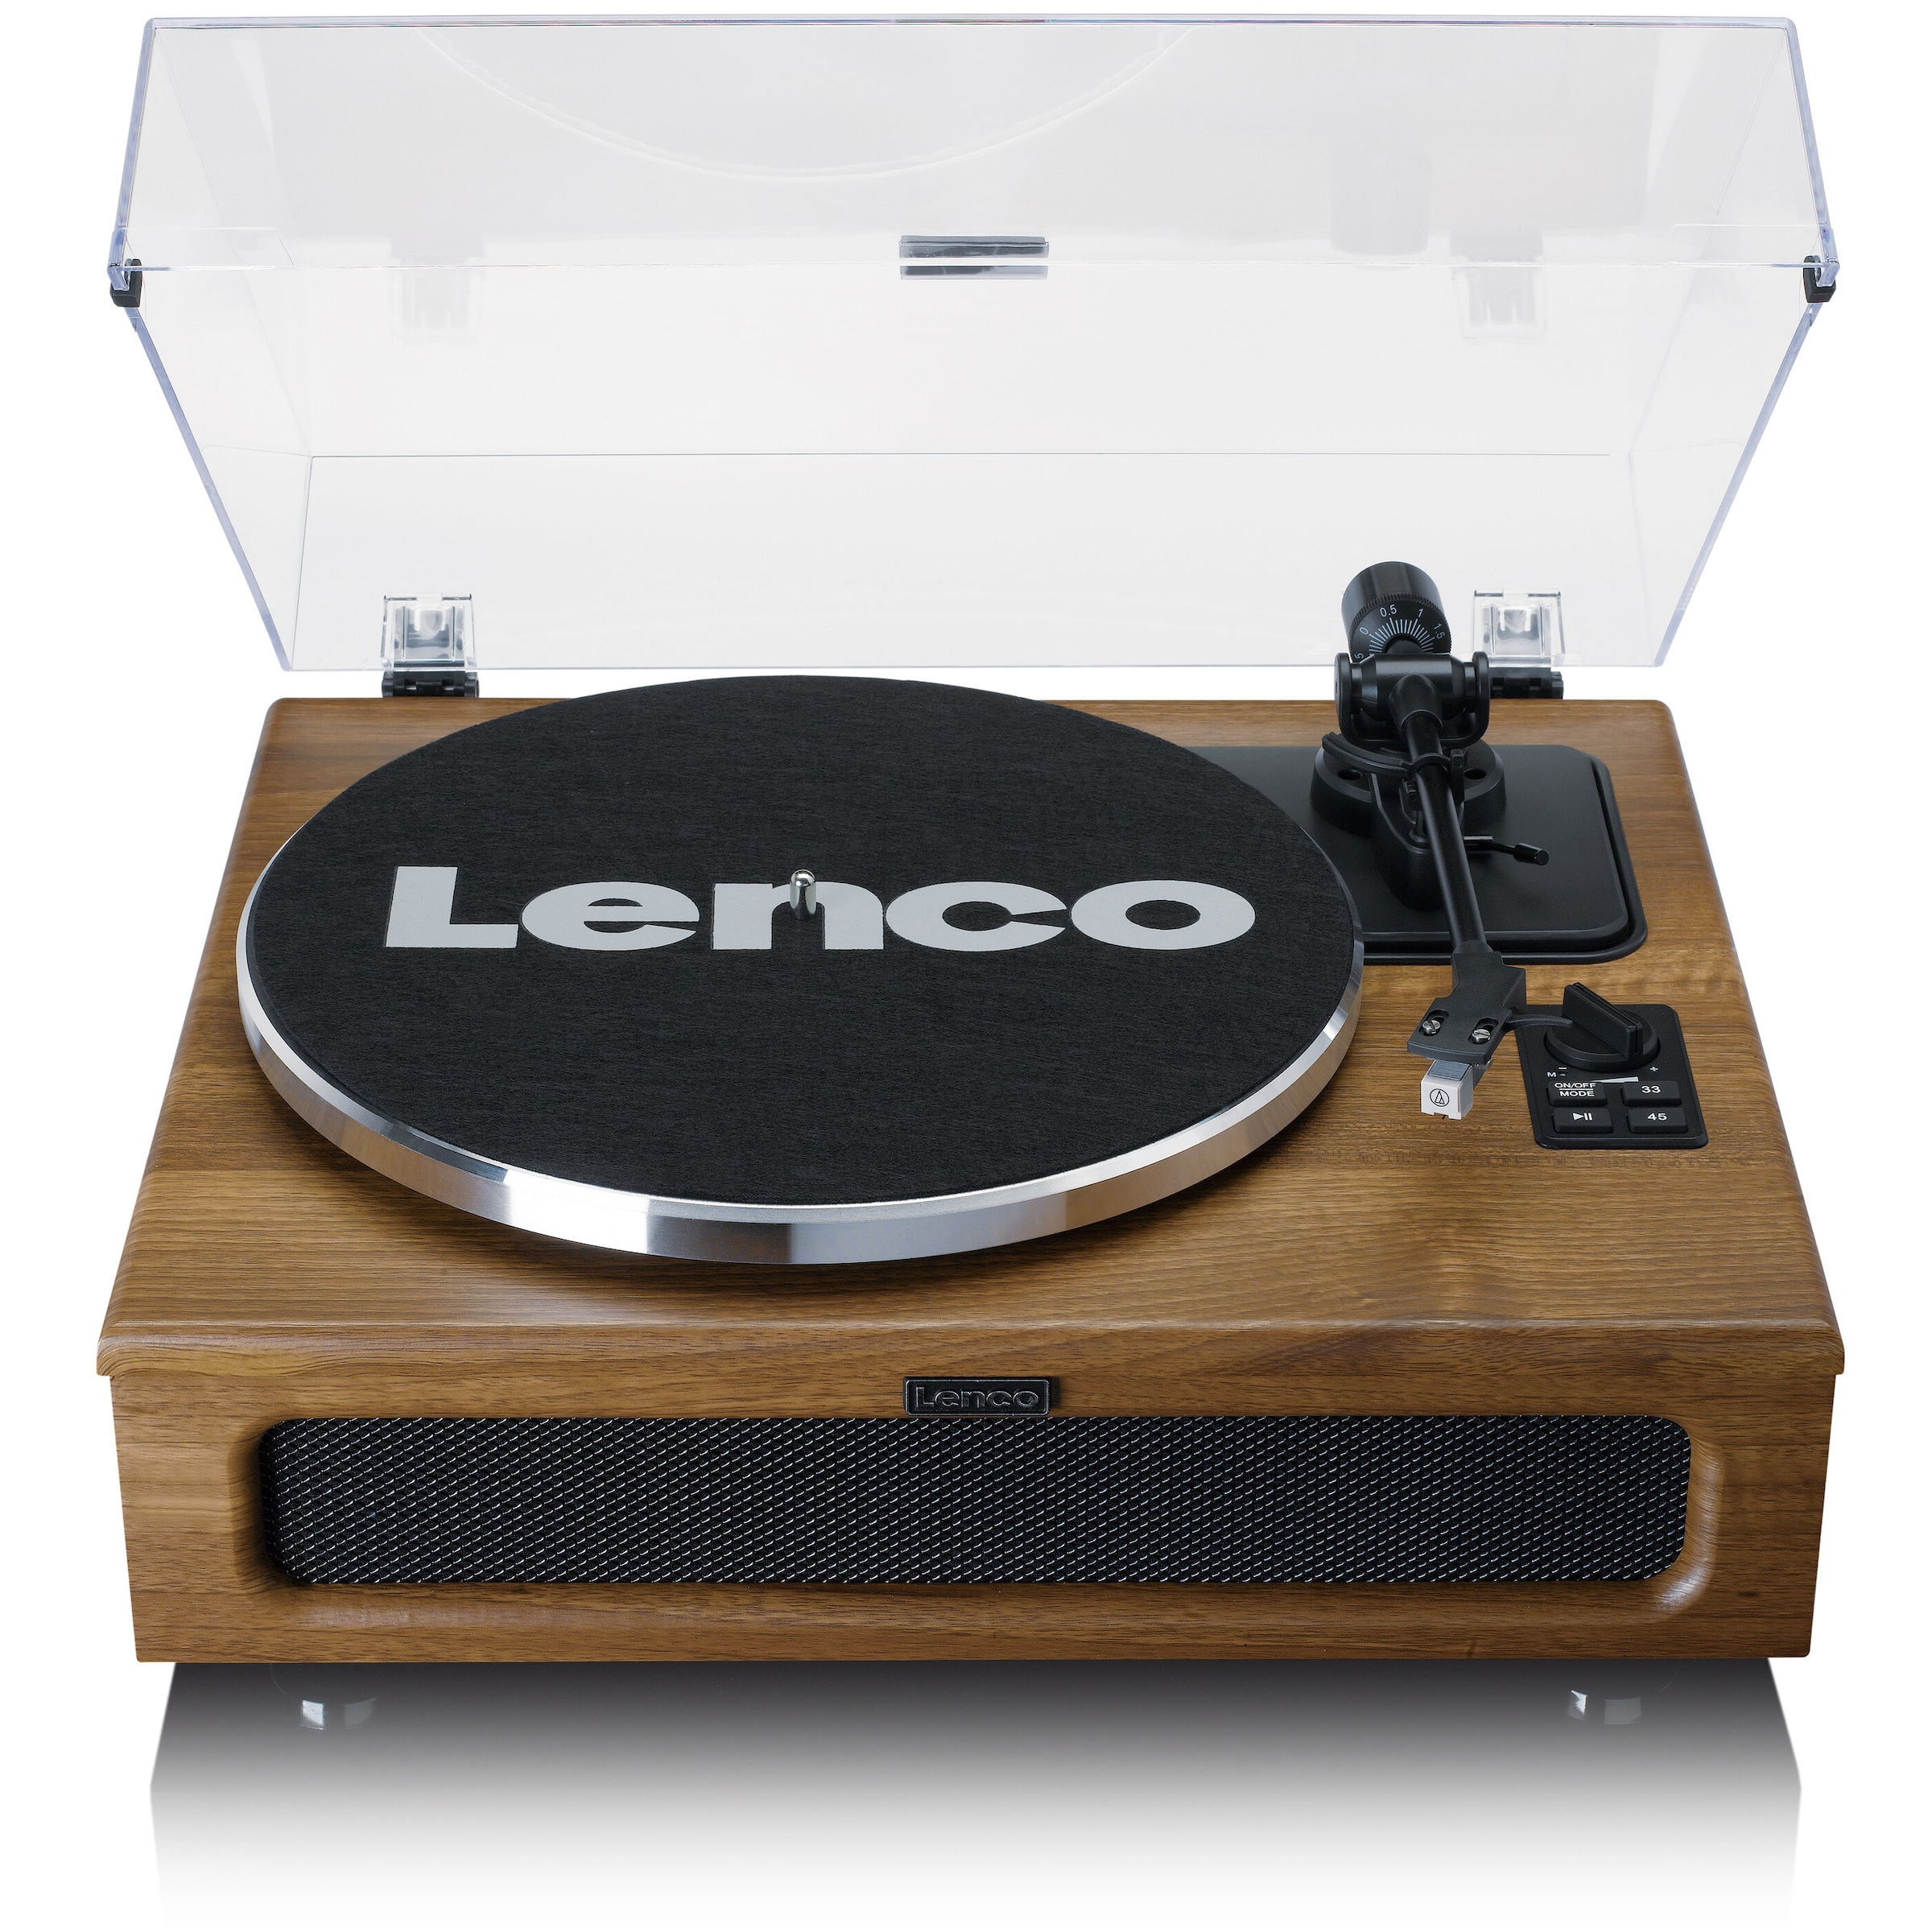 Lenco Plattenspieler »LS-410WA«, Lautsprecher integriert, Bluetooth, Walnuss-Finish